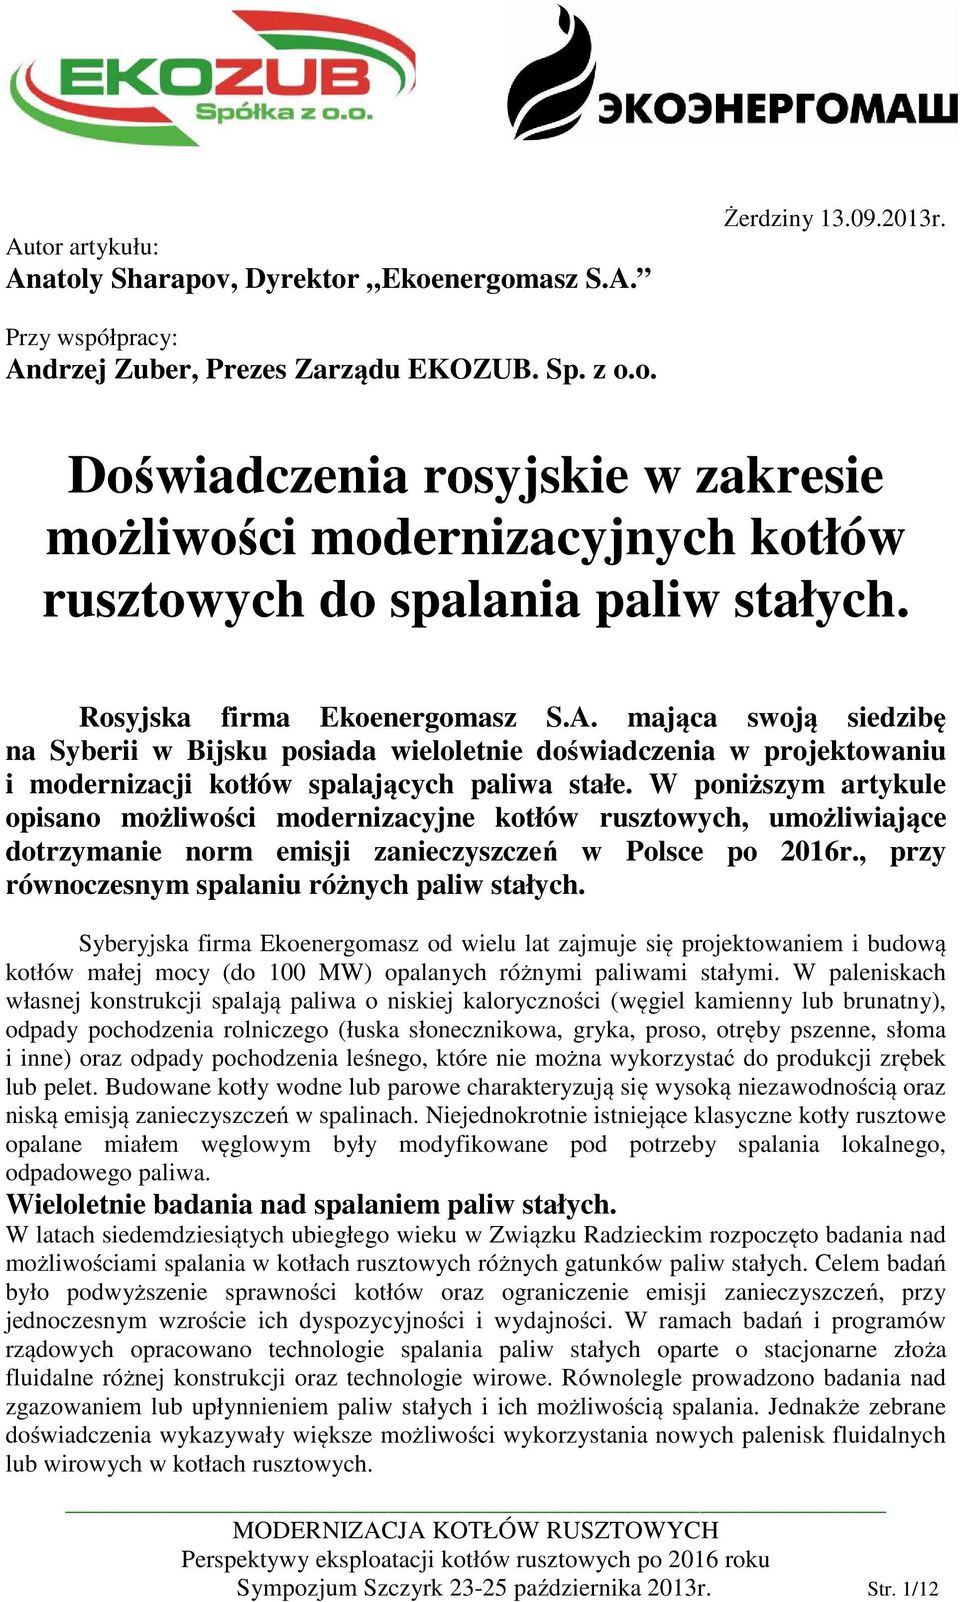 W poniższym artykule opisano możliwości modernizacyjne kotłów rusztowych, umożliwiające dotrzymanie norm emisji zanieczyszczeń w Polsce po 2016r., przy równoczesnym spalaniu różnych paliw stałych.